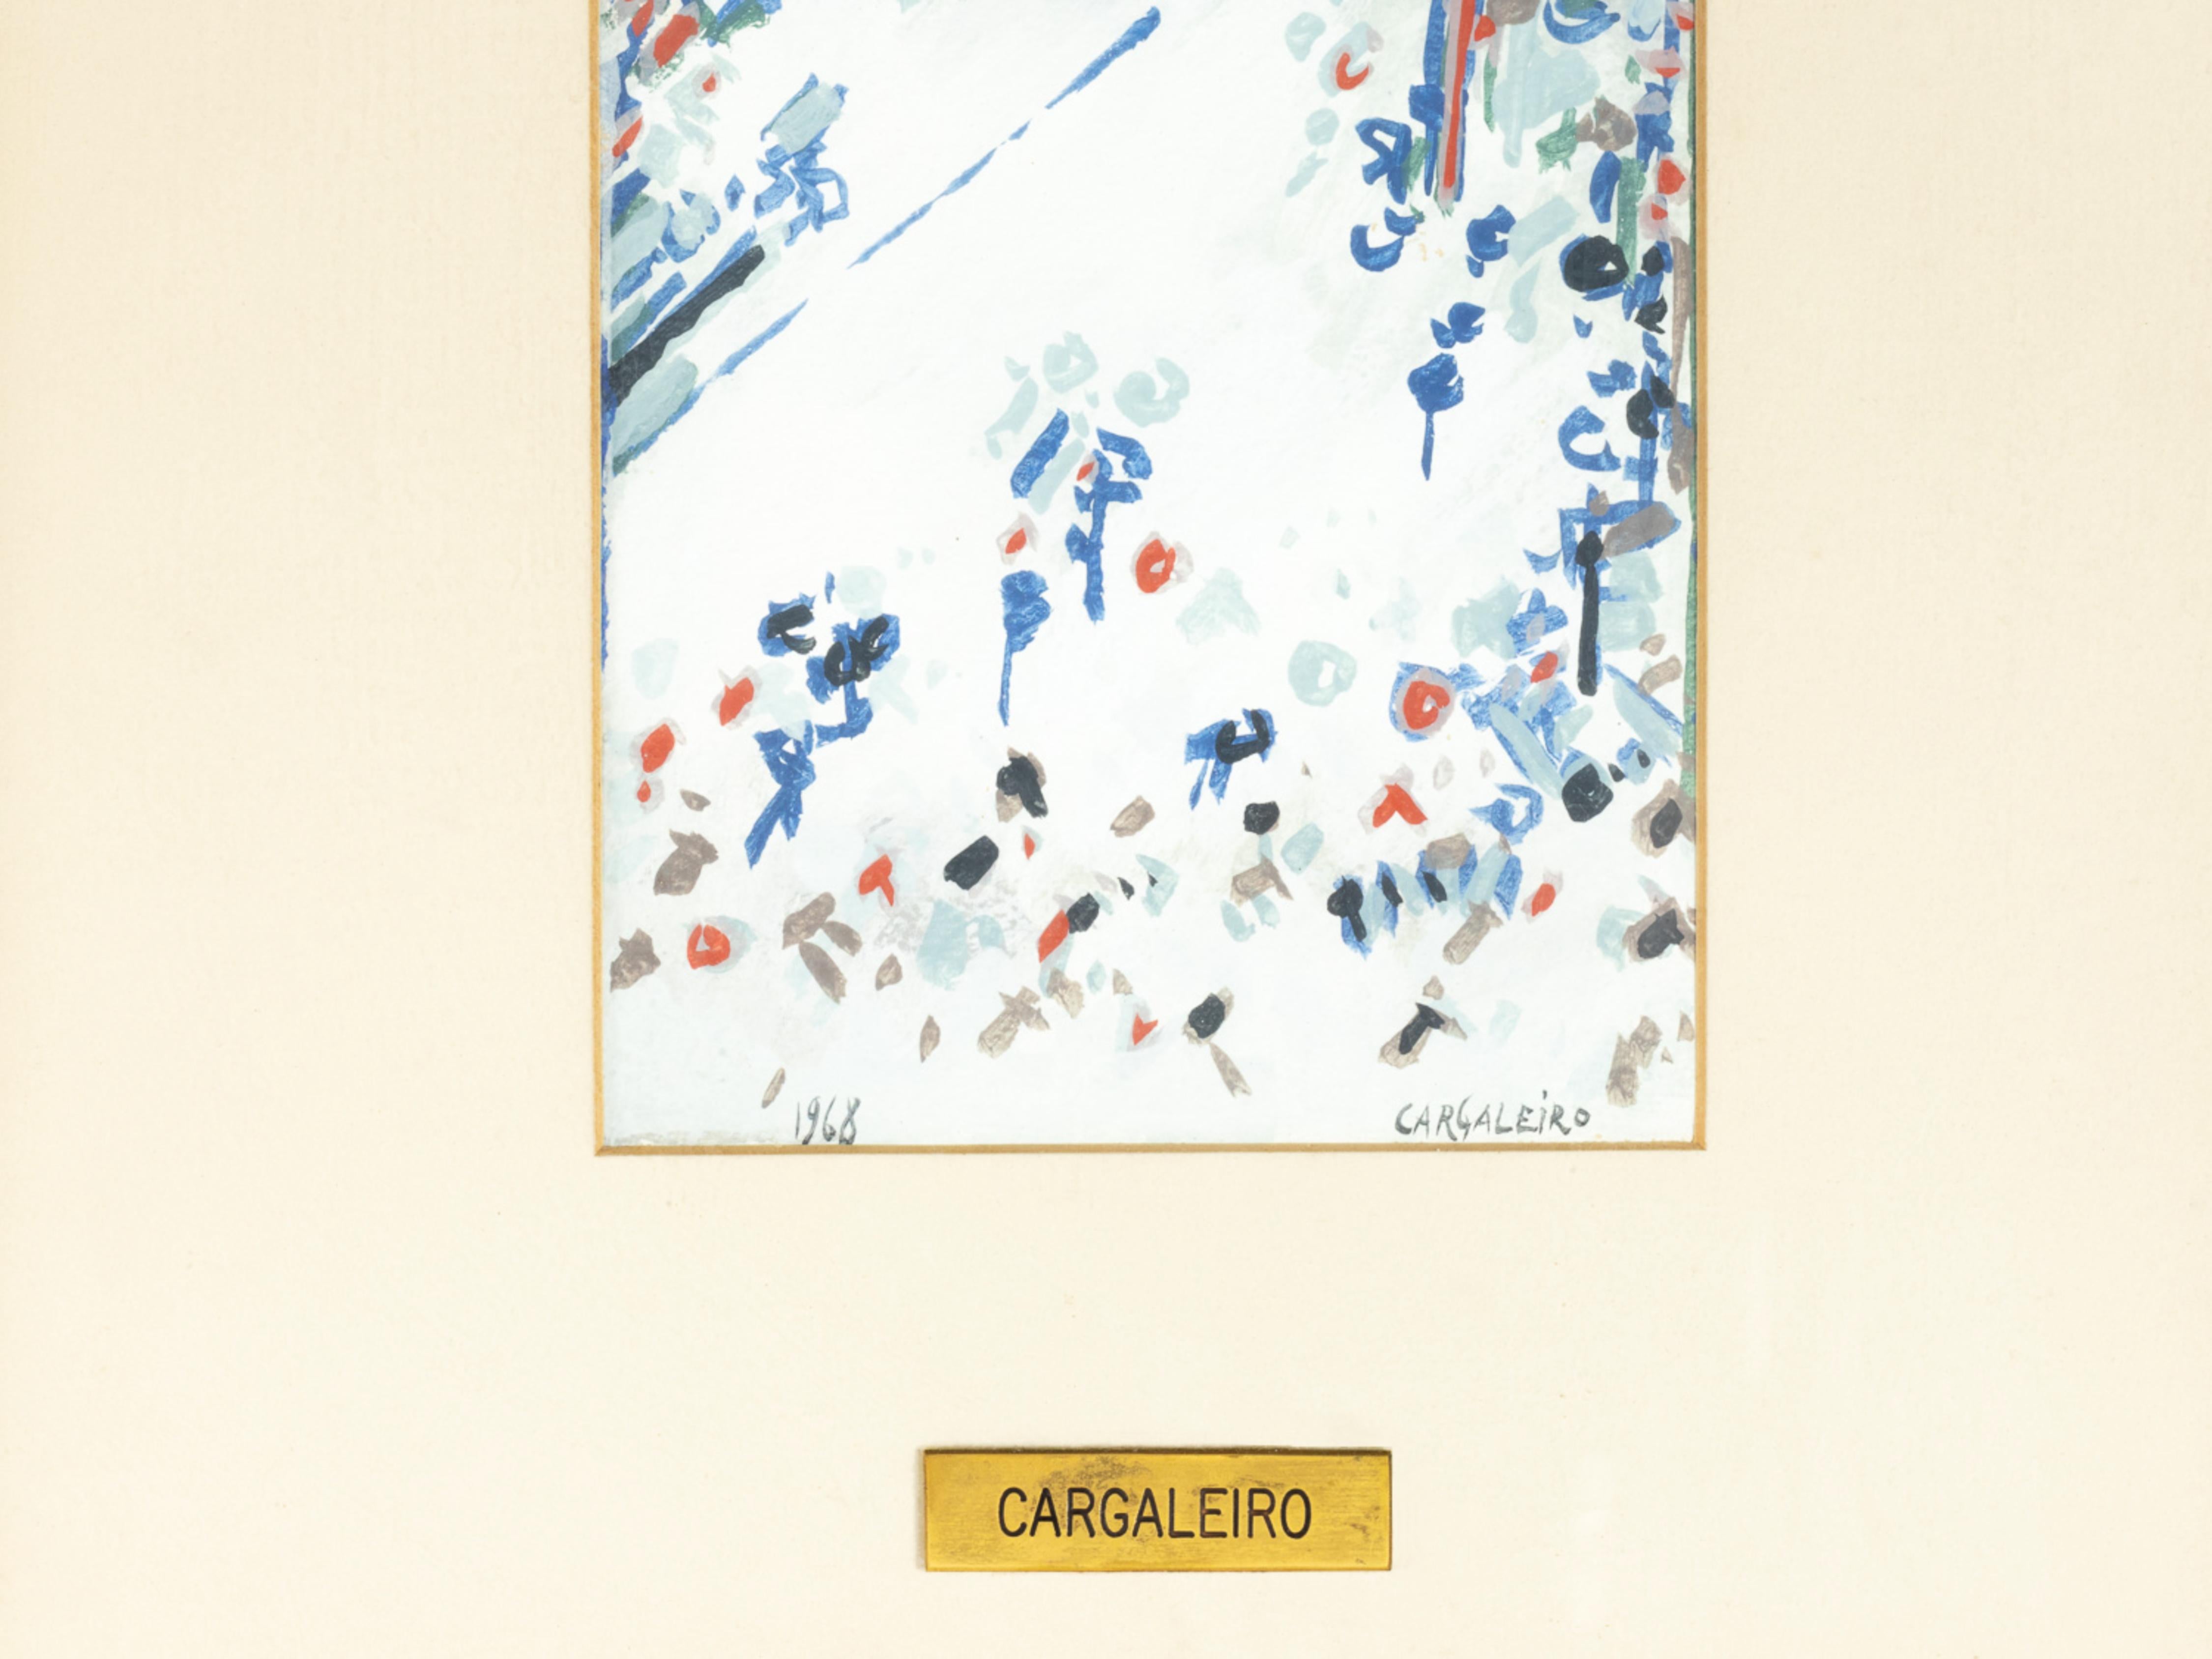 Une aquarelle moderniste du maître portugais Manuel Cargaleiro, signée, datée et authentifiée - 1968. 

Sur la scène artistique mondiale, Manuel Gaines s'est fait connaître en exposant ses œuvres au Brésil, au Japon et dans des pays européens comme